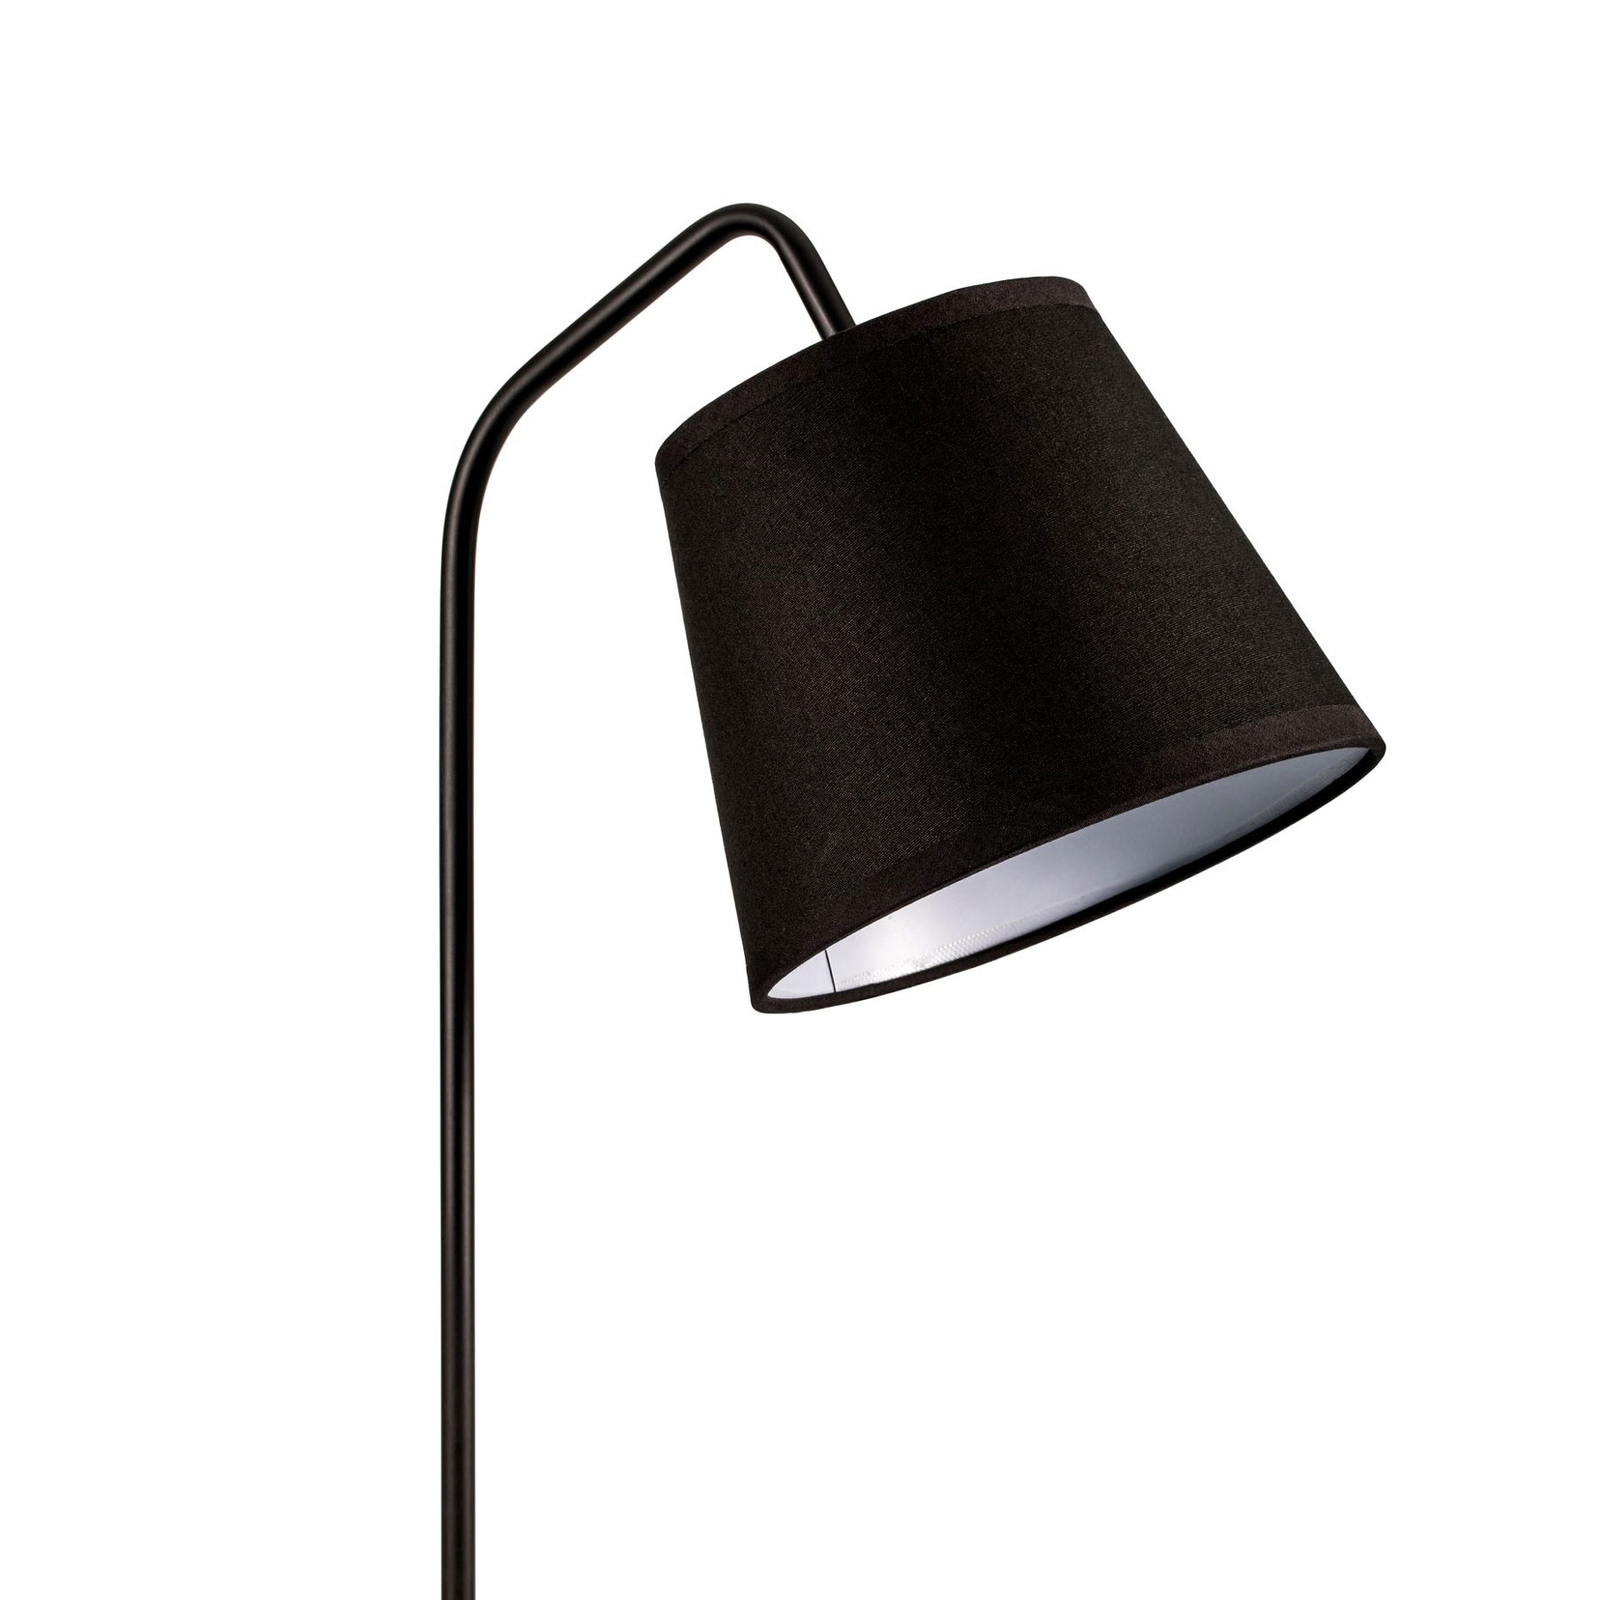 Pauleen True Elegance table lamp all in black